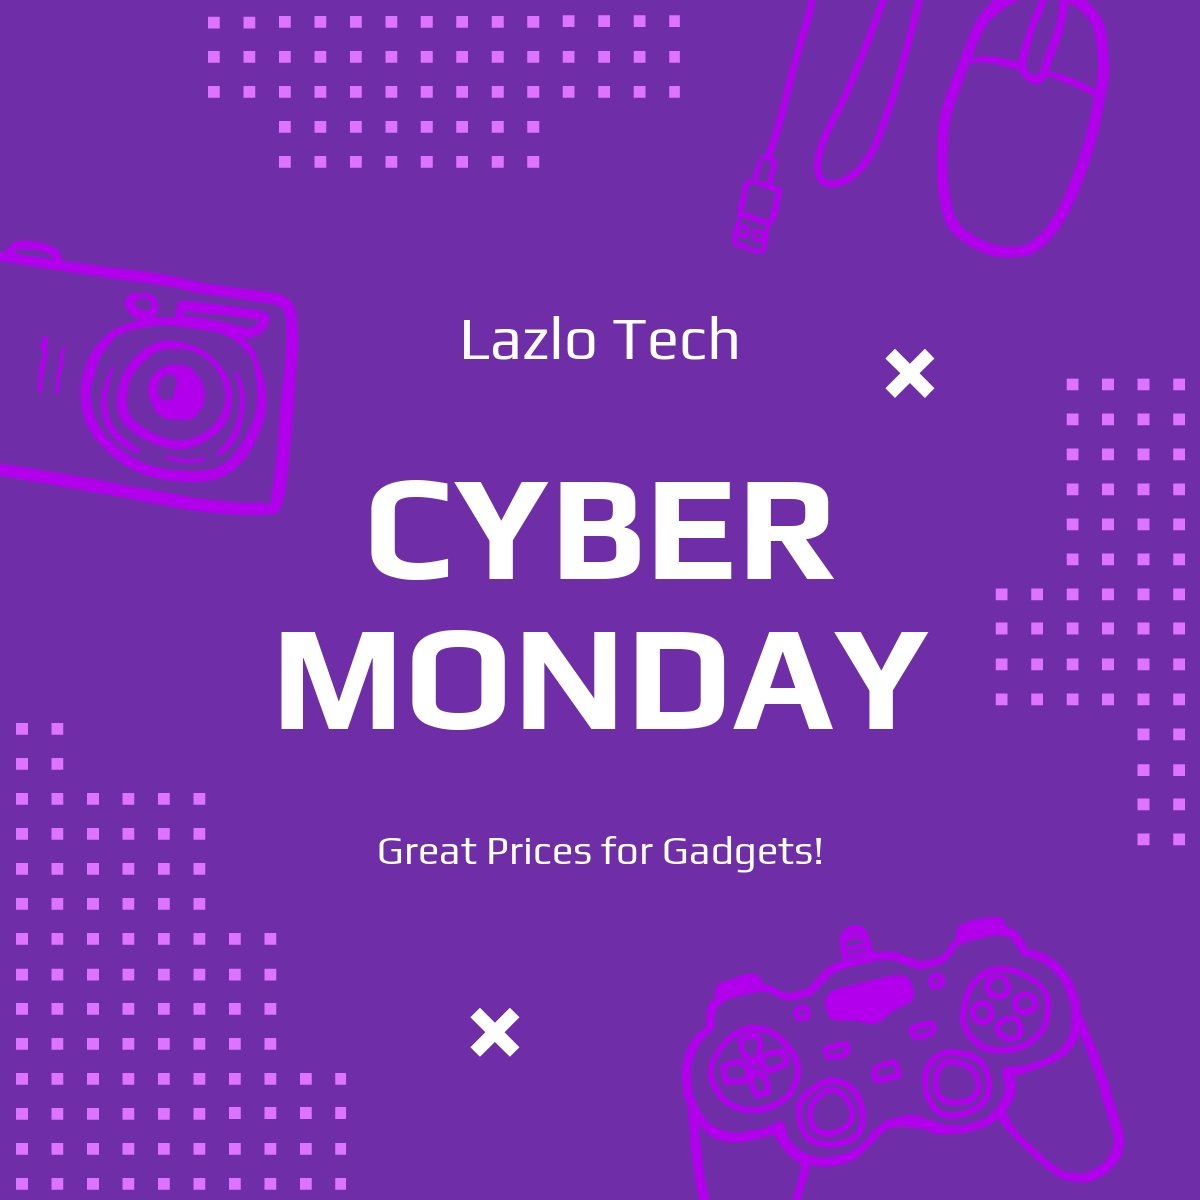 Cyber Monday Promotion LinkedIn Post